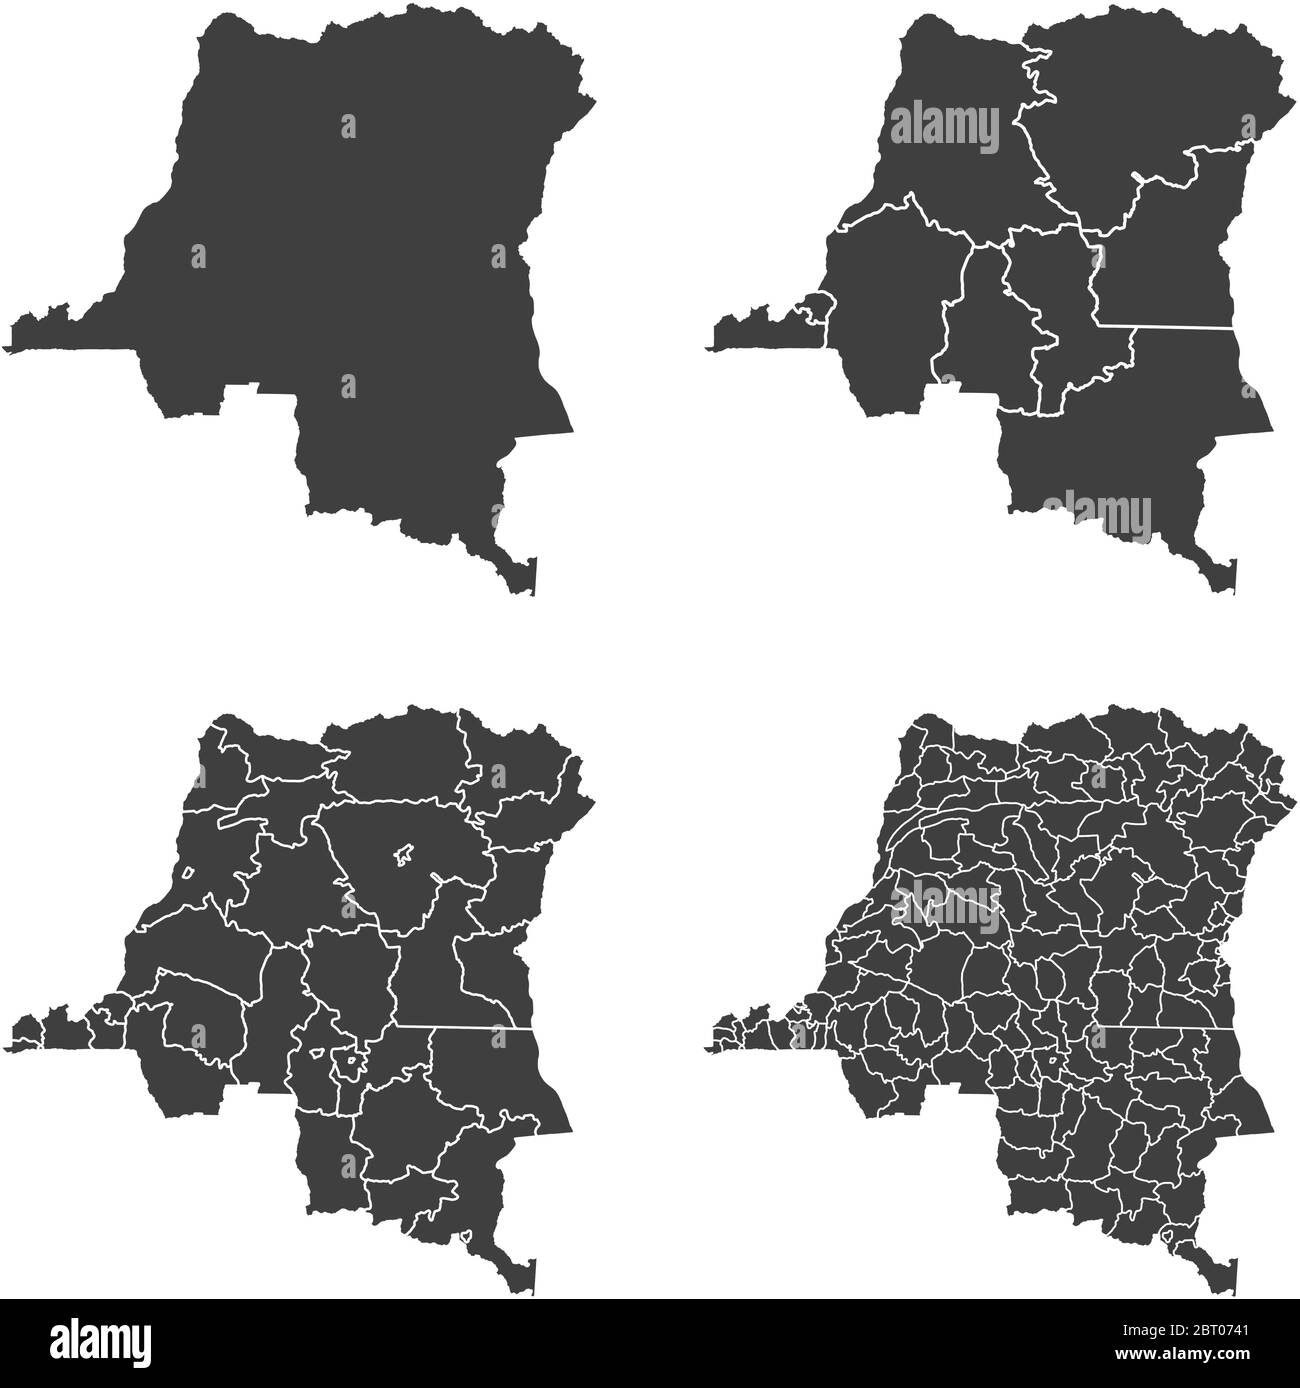 République démocratique du Congo cartes vectorielles avec régions administratives, municipalités, départements, frontières Illustration de Vecteur